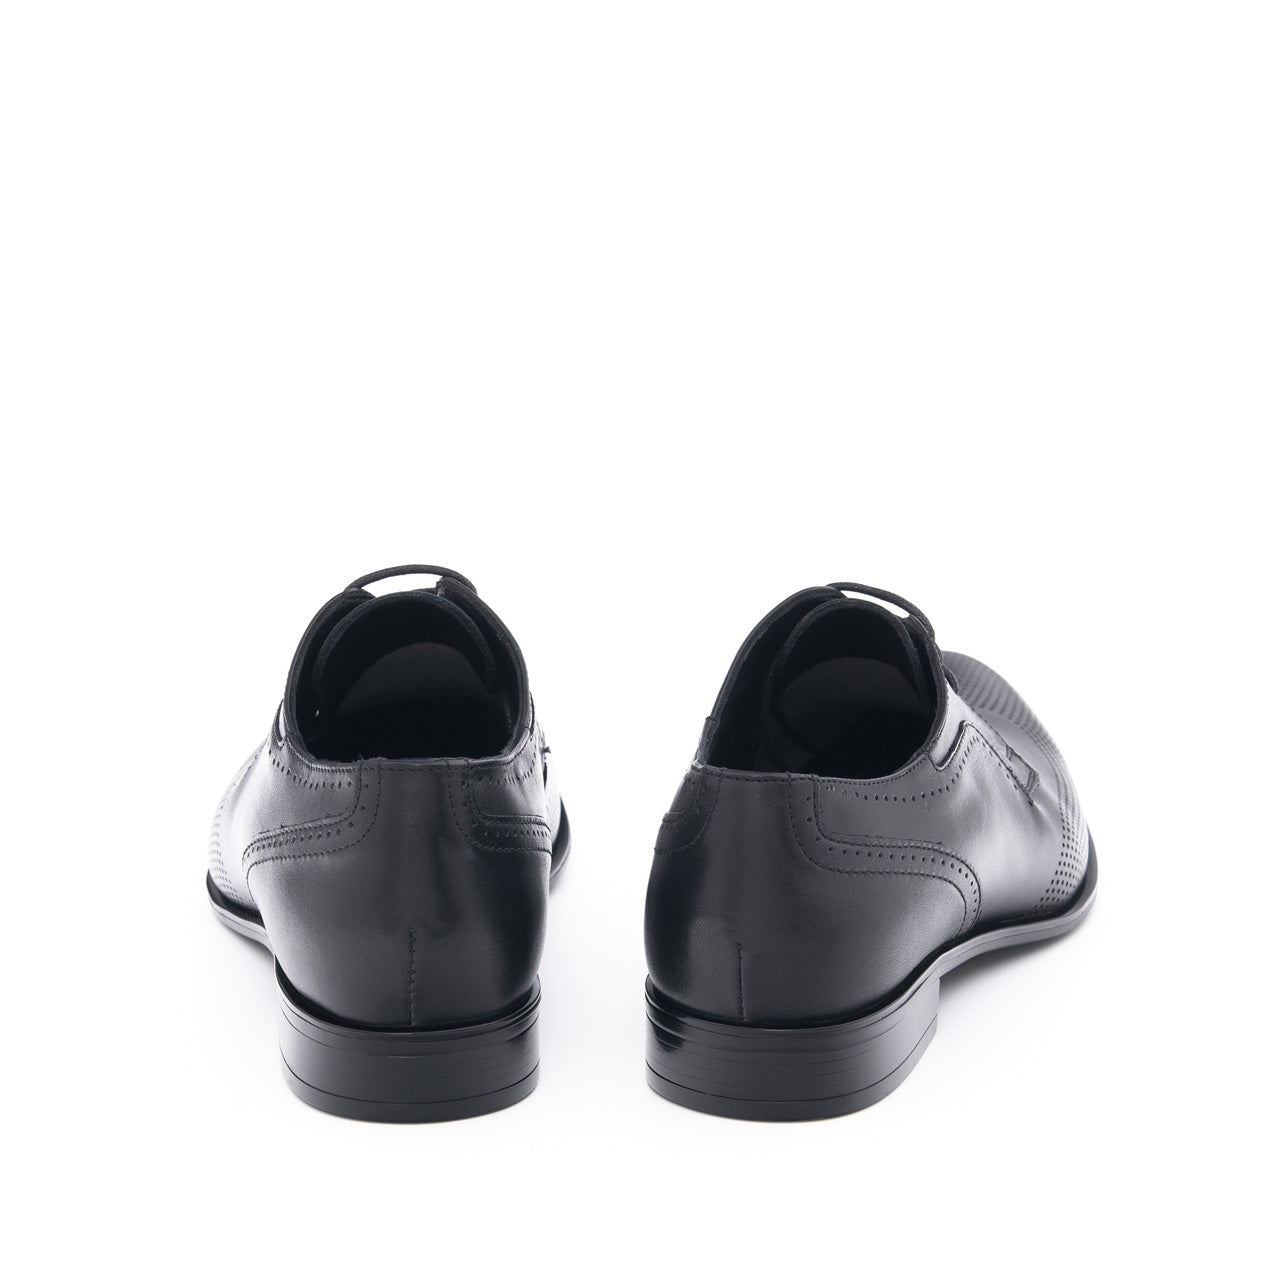 Pantofi eleganti barbati Dominic gravat negru